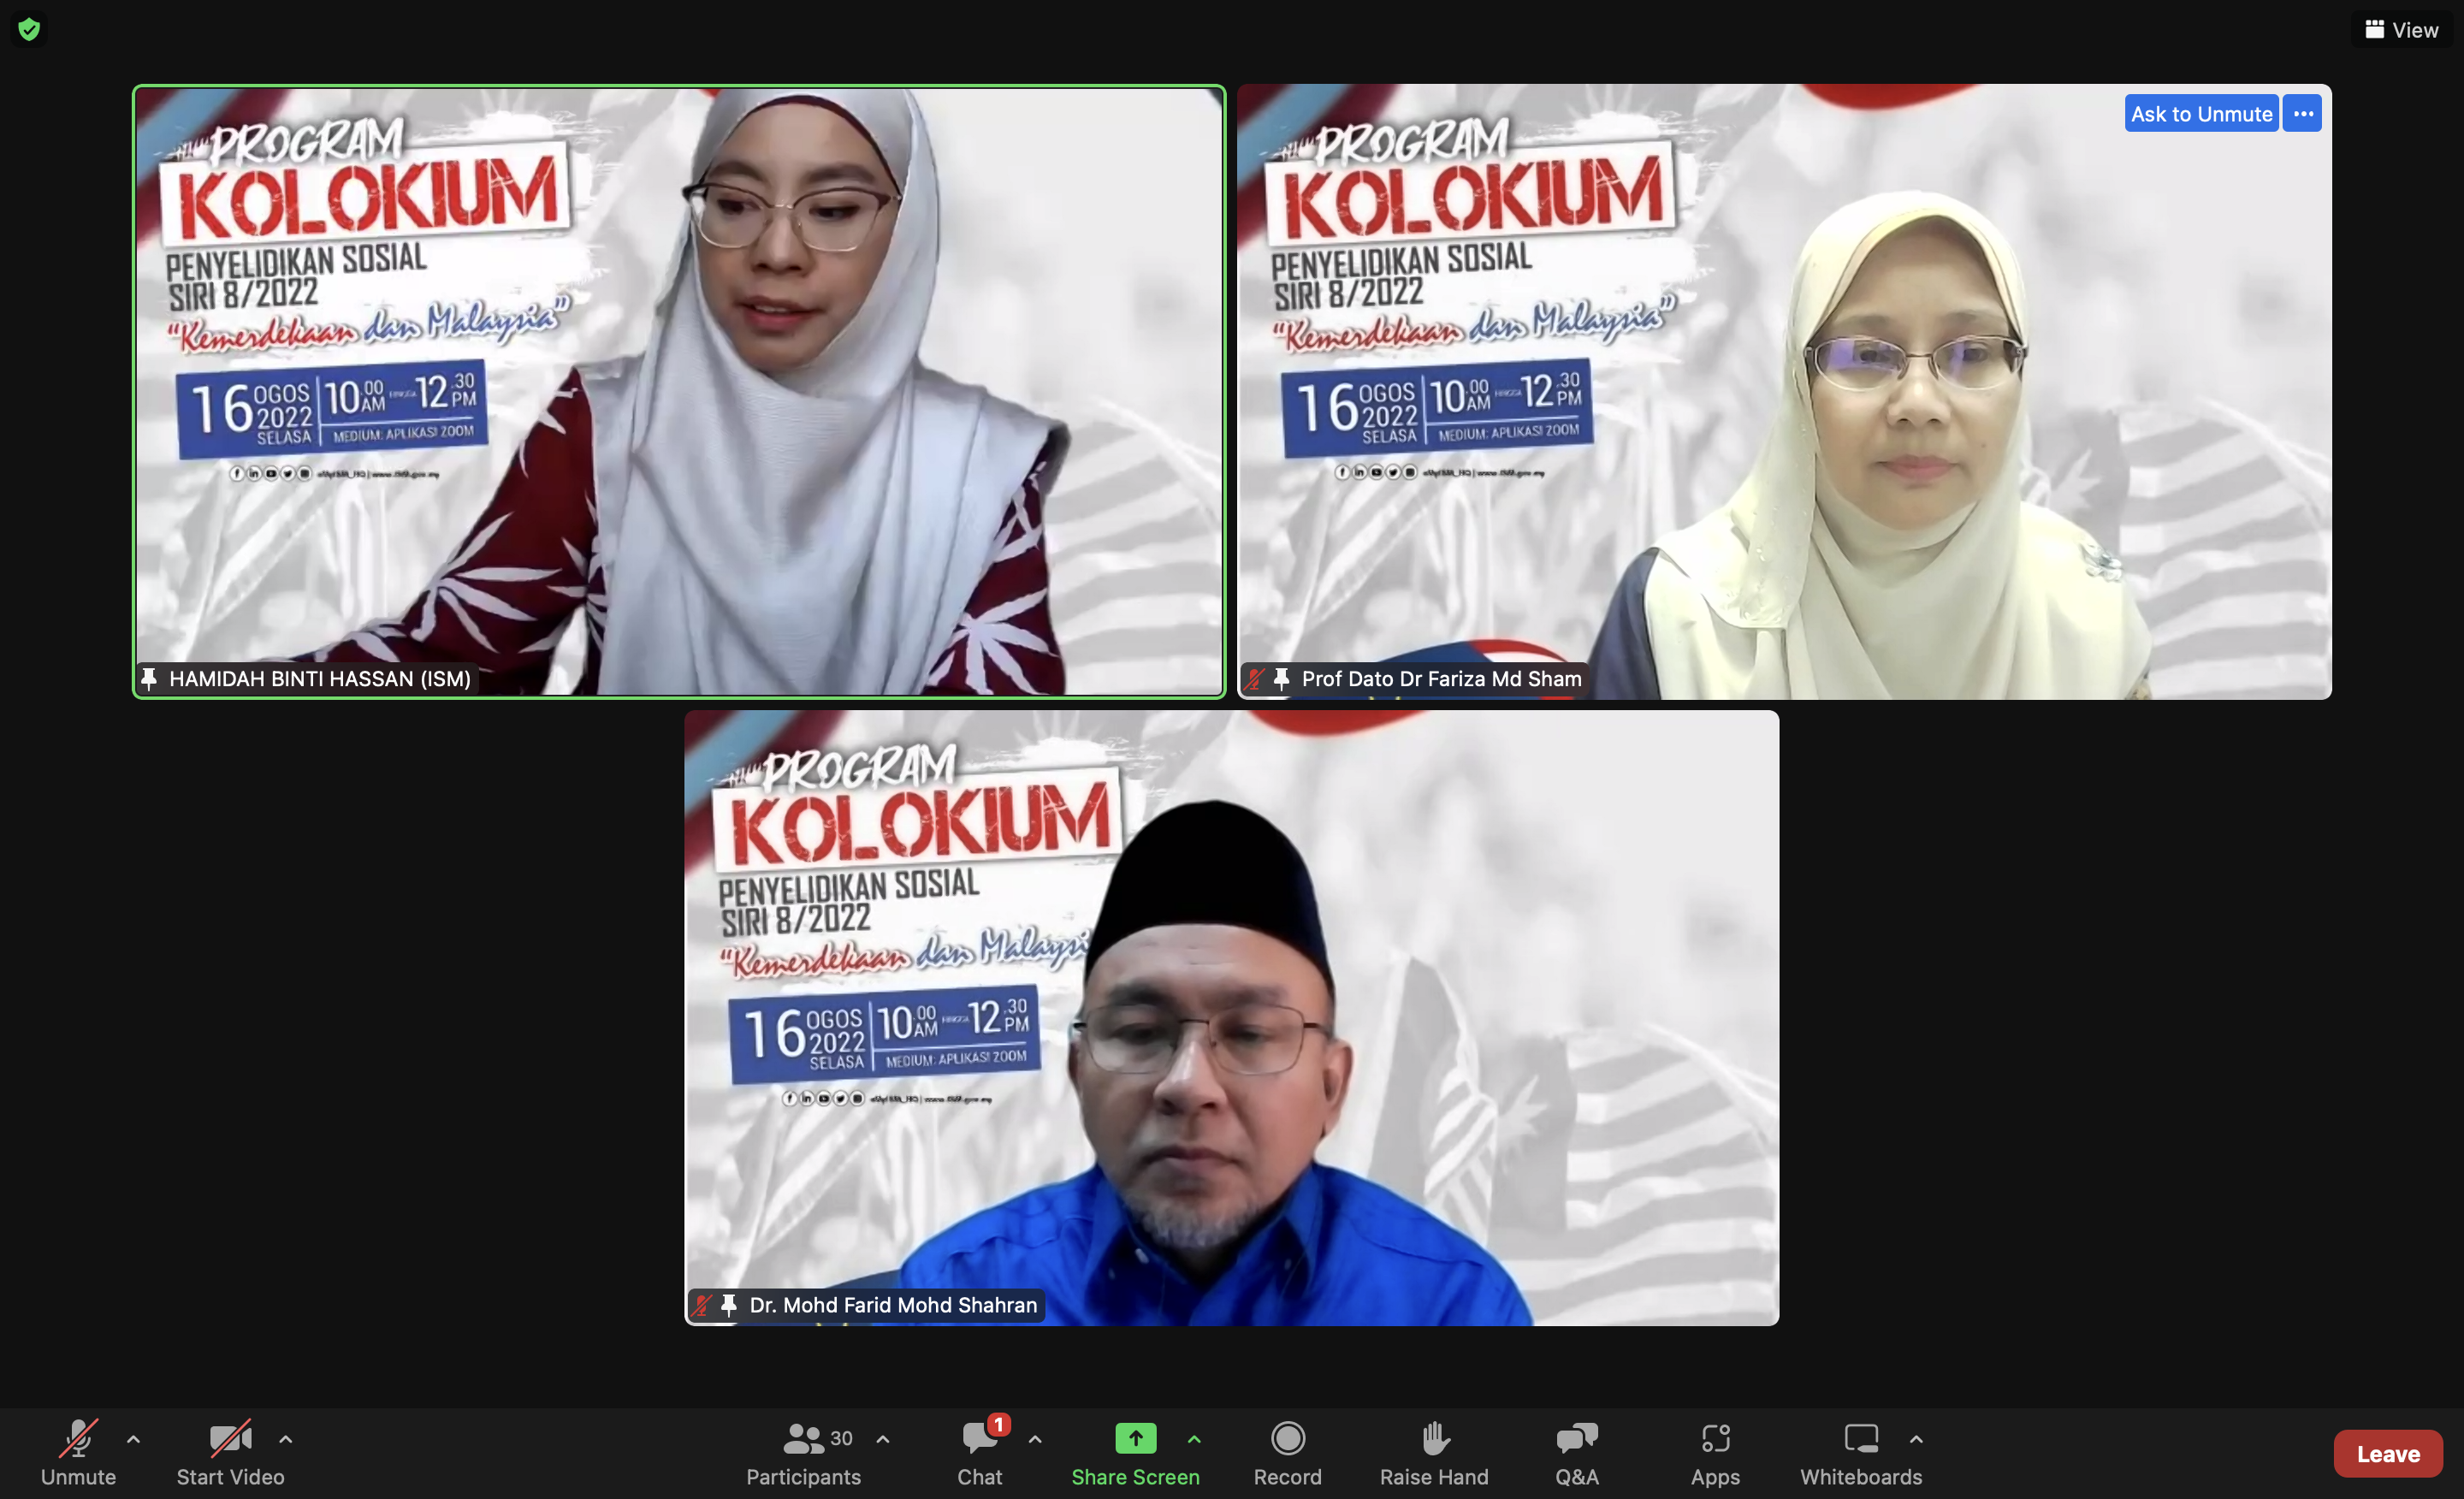 Program Kolokium Penyelidikan Sosial Ism Siri 8-2022 Bertemakan Kemerdekaan Dan Malaysia pic 012